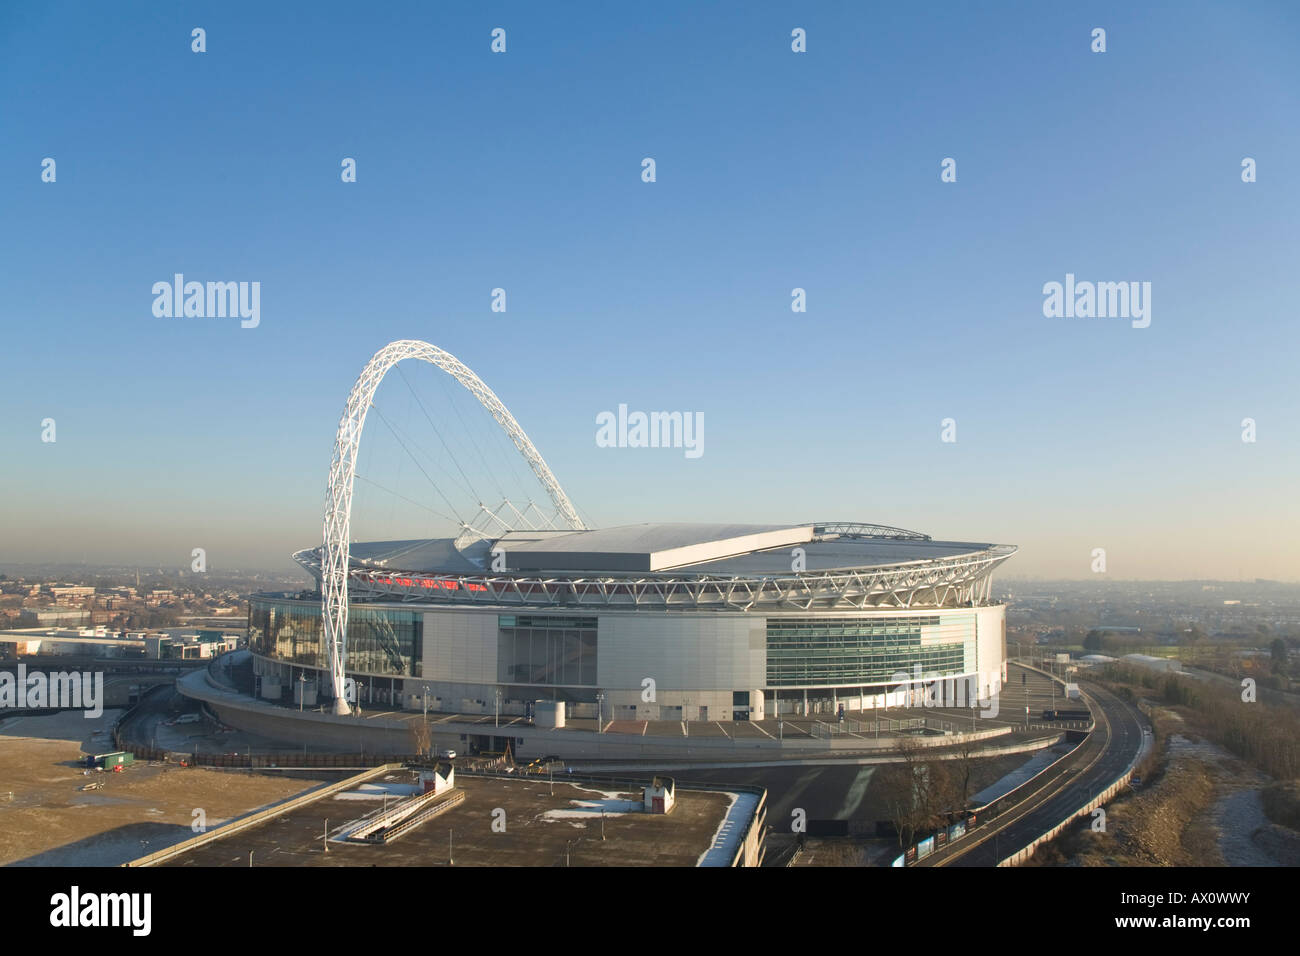 Inghilterra, Londra, Brent, Wembley, Nuovo Stadio di Wembley, l'arco è la più lunga del mondo non supportato la struttura del tetto Foto Stock